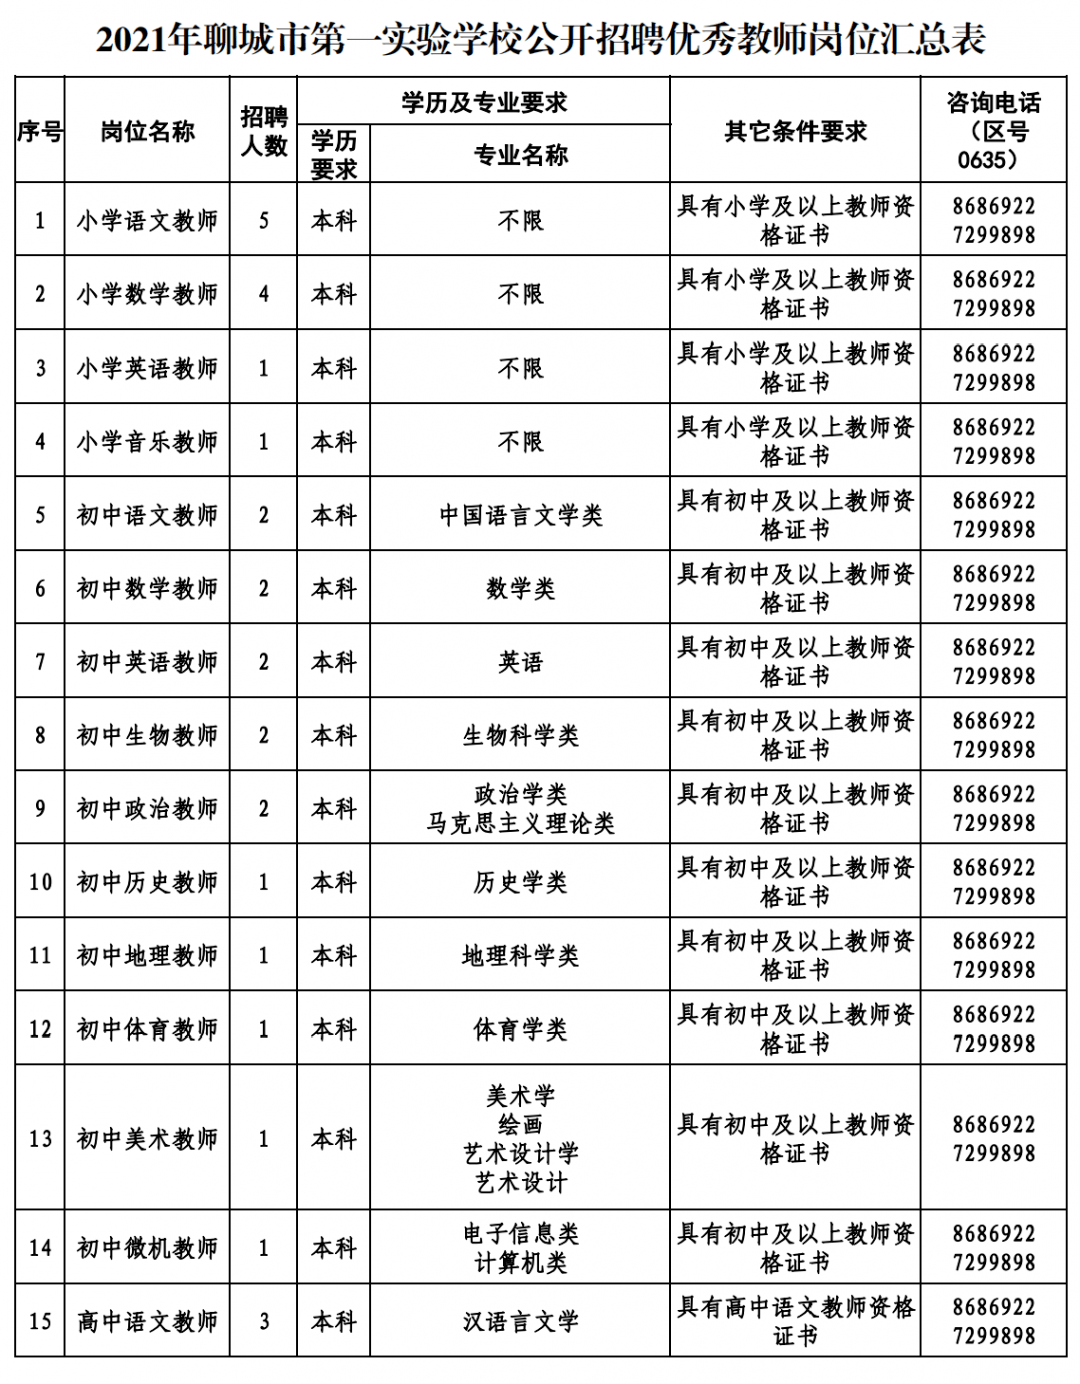 2021年宁夏事业单位招聘职位表下载(组图)人